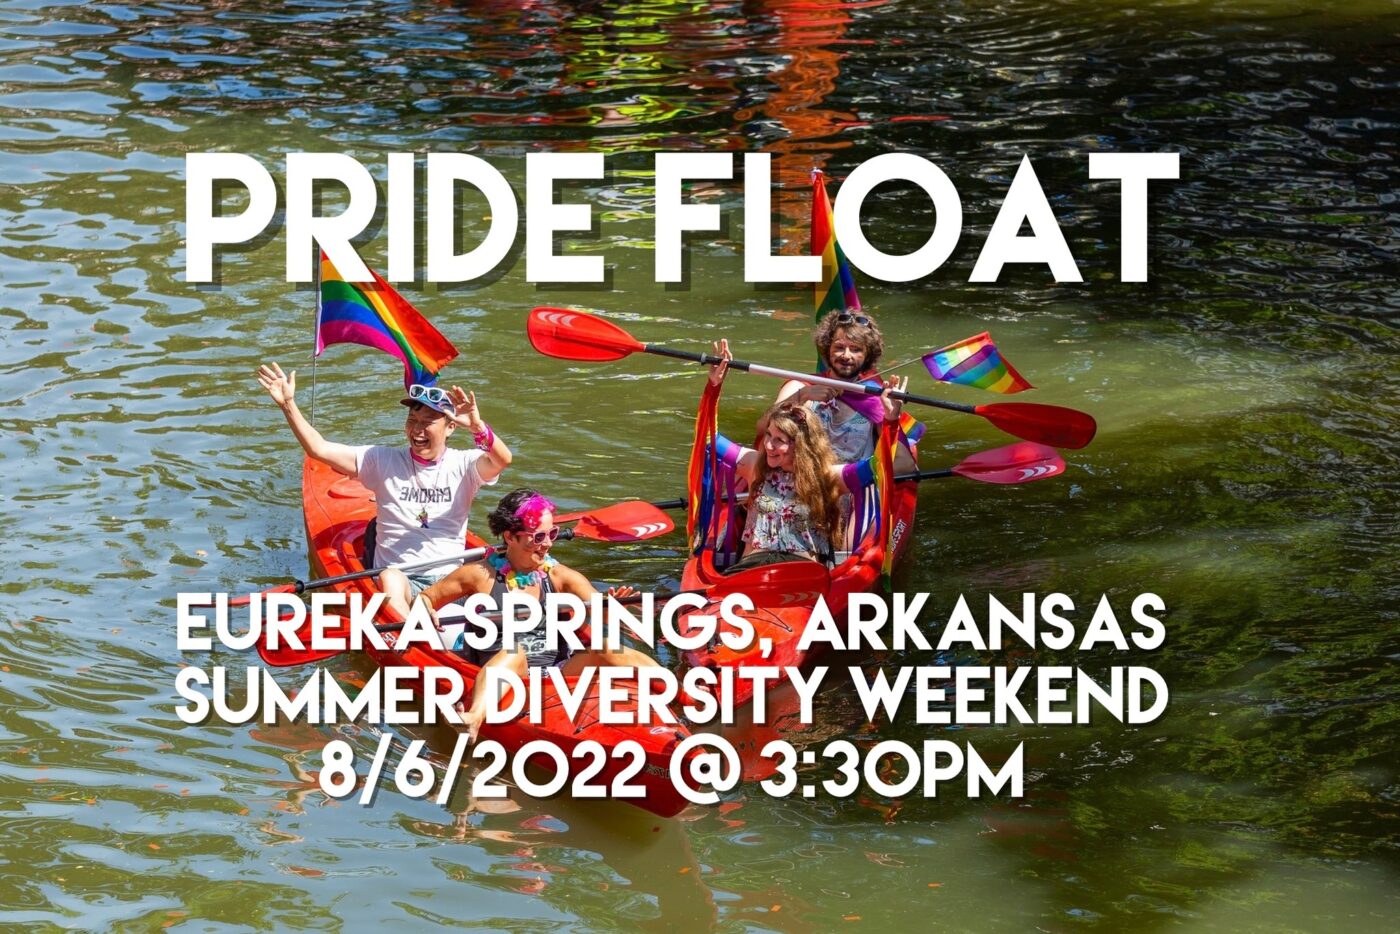 Summer Diversity Weekend Pride Float at Eureka Springs Adventures